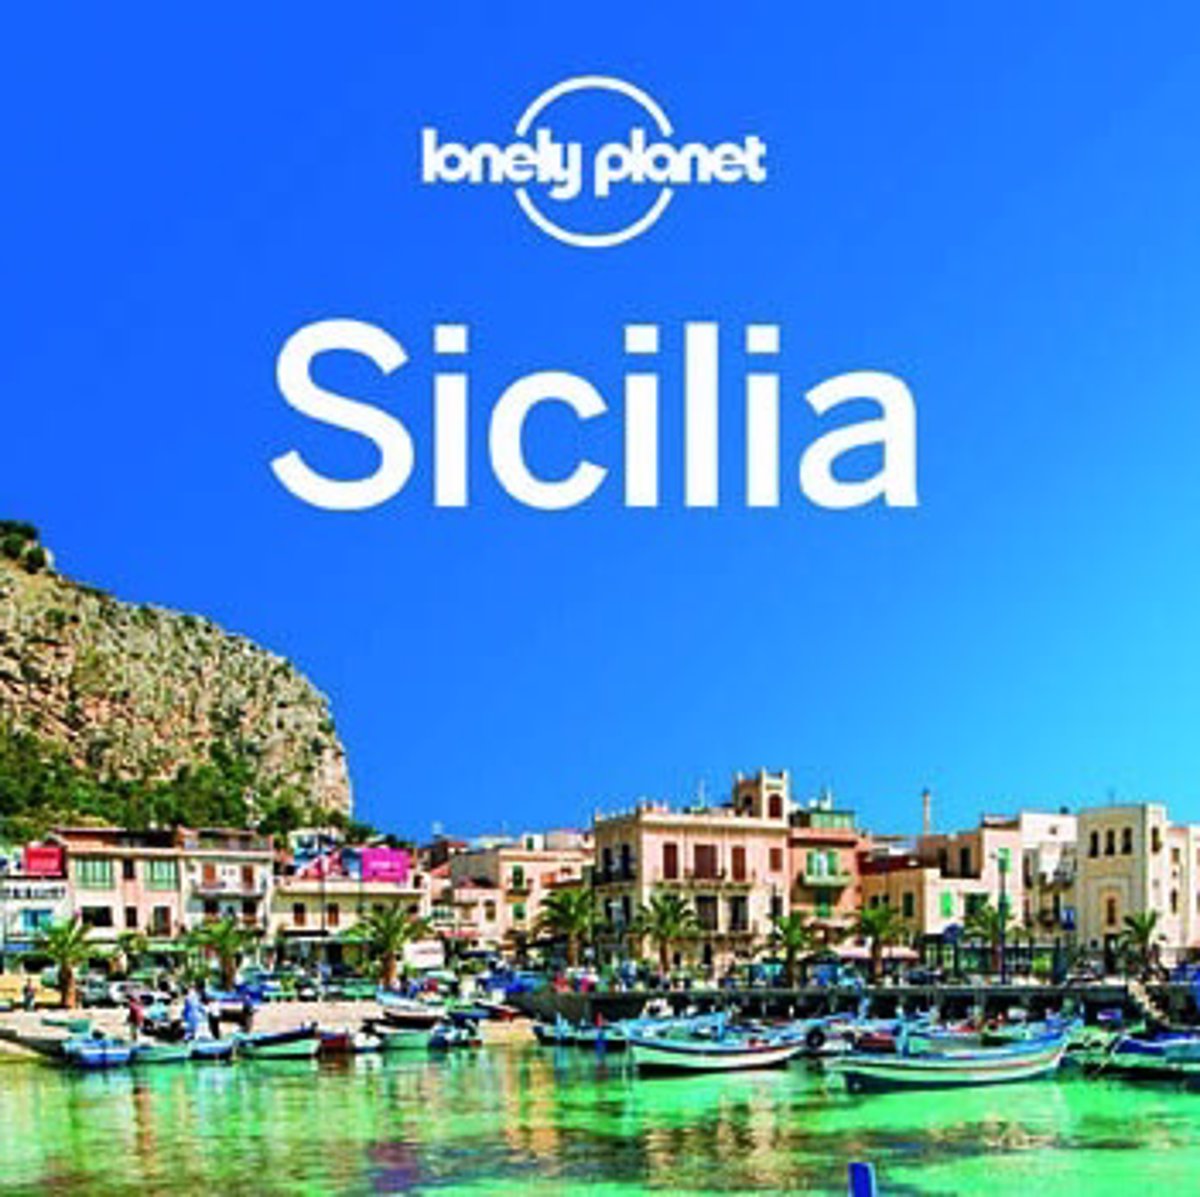 Sicilia, uno de los destinos Lonely Planet para este verano